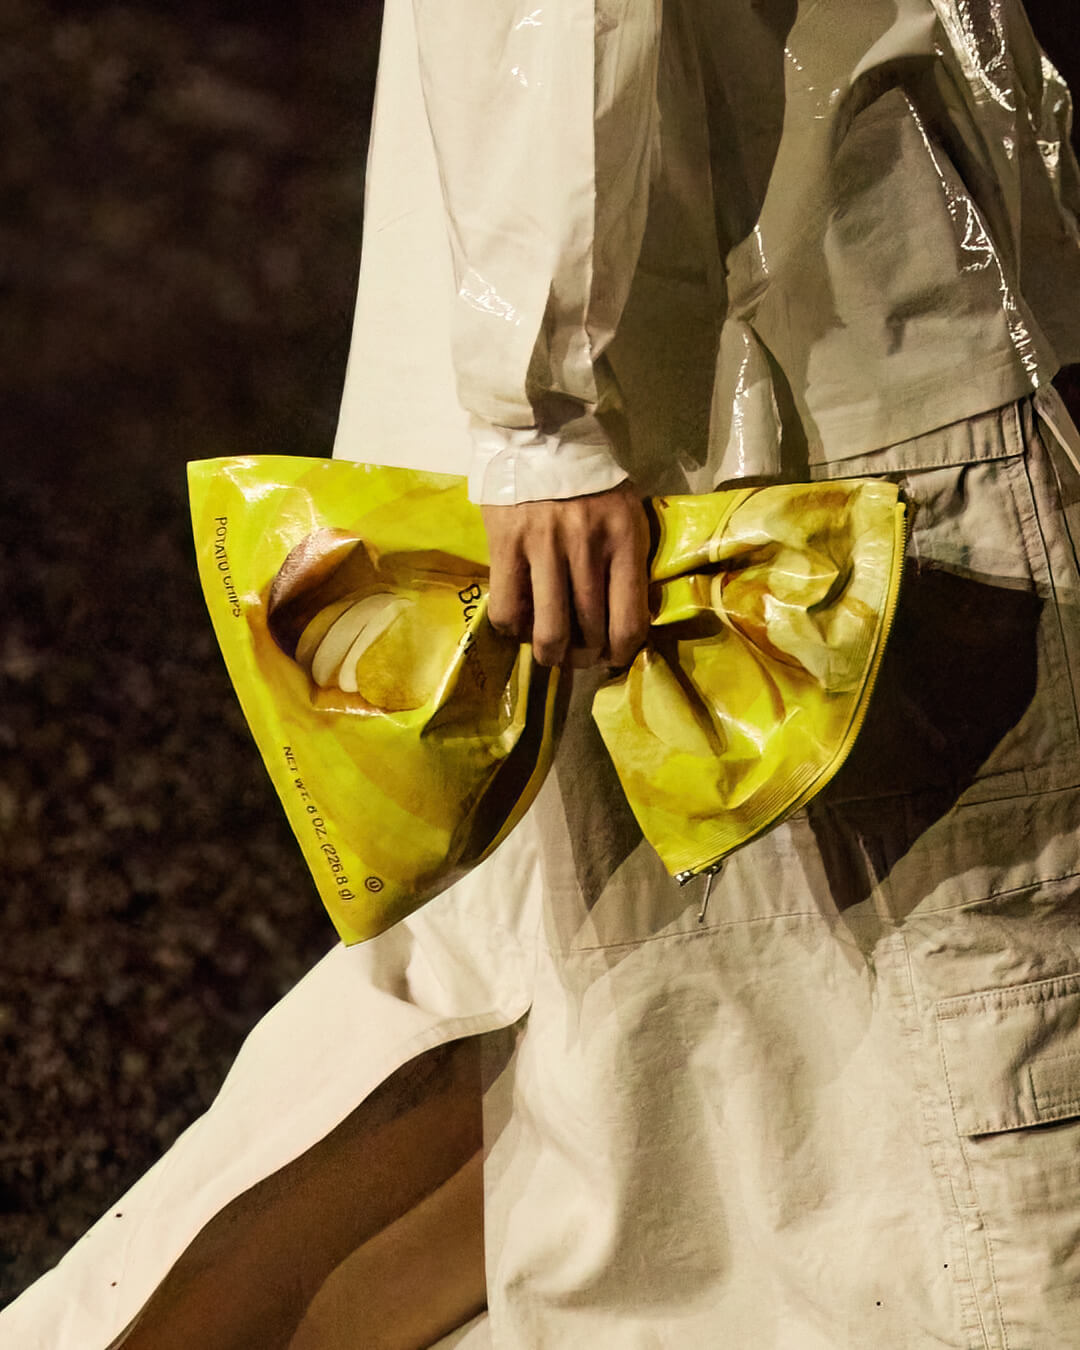 Balenciaga designed the Lay's Potato Chip Bag